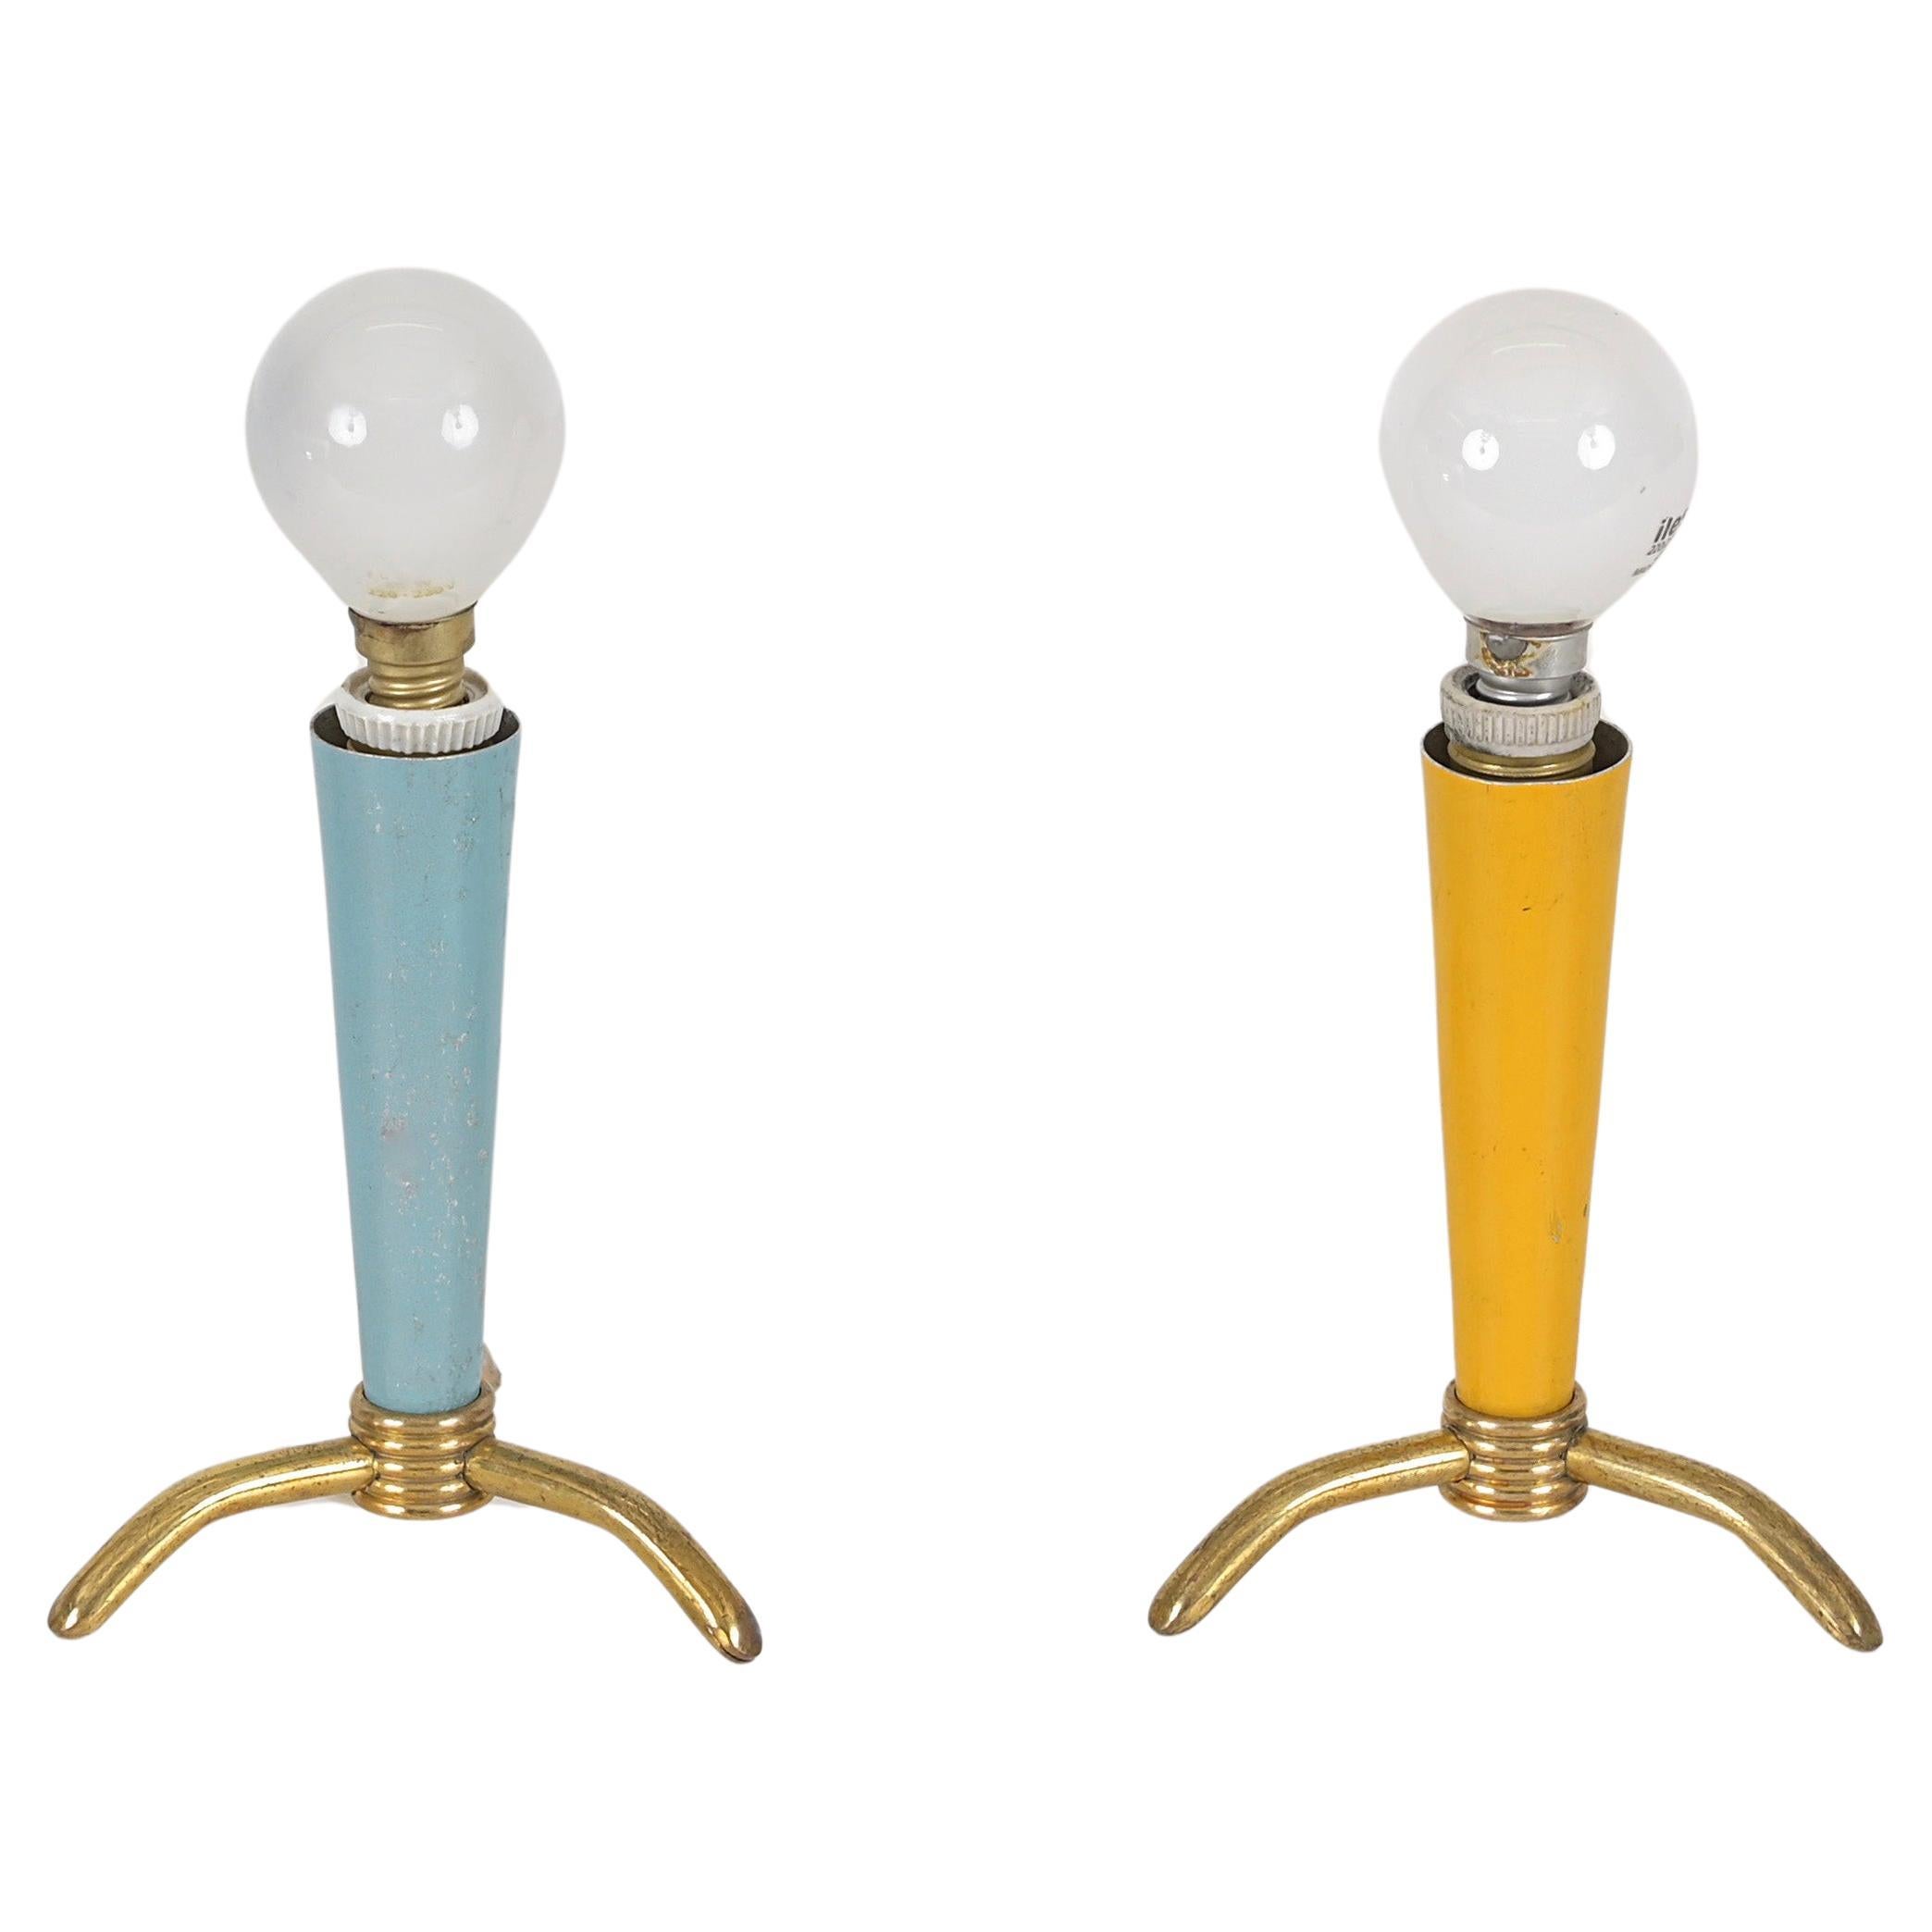 Charmantes Paar dreibeiniger Tischlampen aus Messing und emailliertem Metall. Diese schönen Lampen werden Stilnovo zugeschrieben und wurden in den 1950er Jahren in Italien hergestellt.

Die kleinen Lampen haben einen reizvollen kegelförmigen Schirm